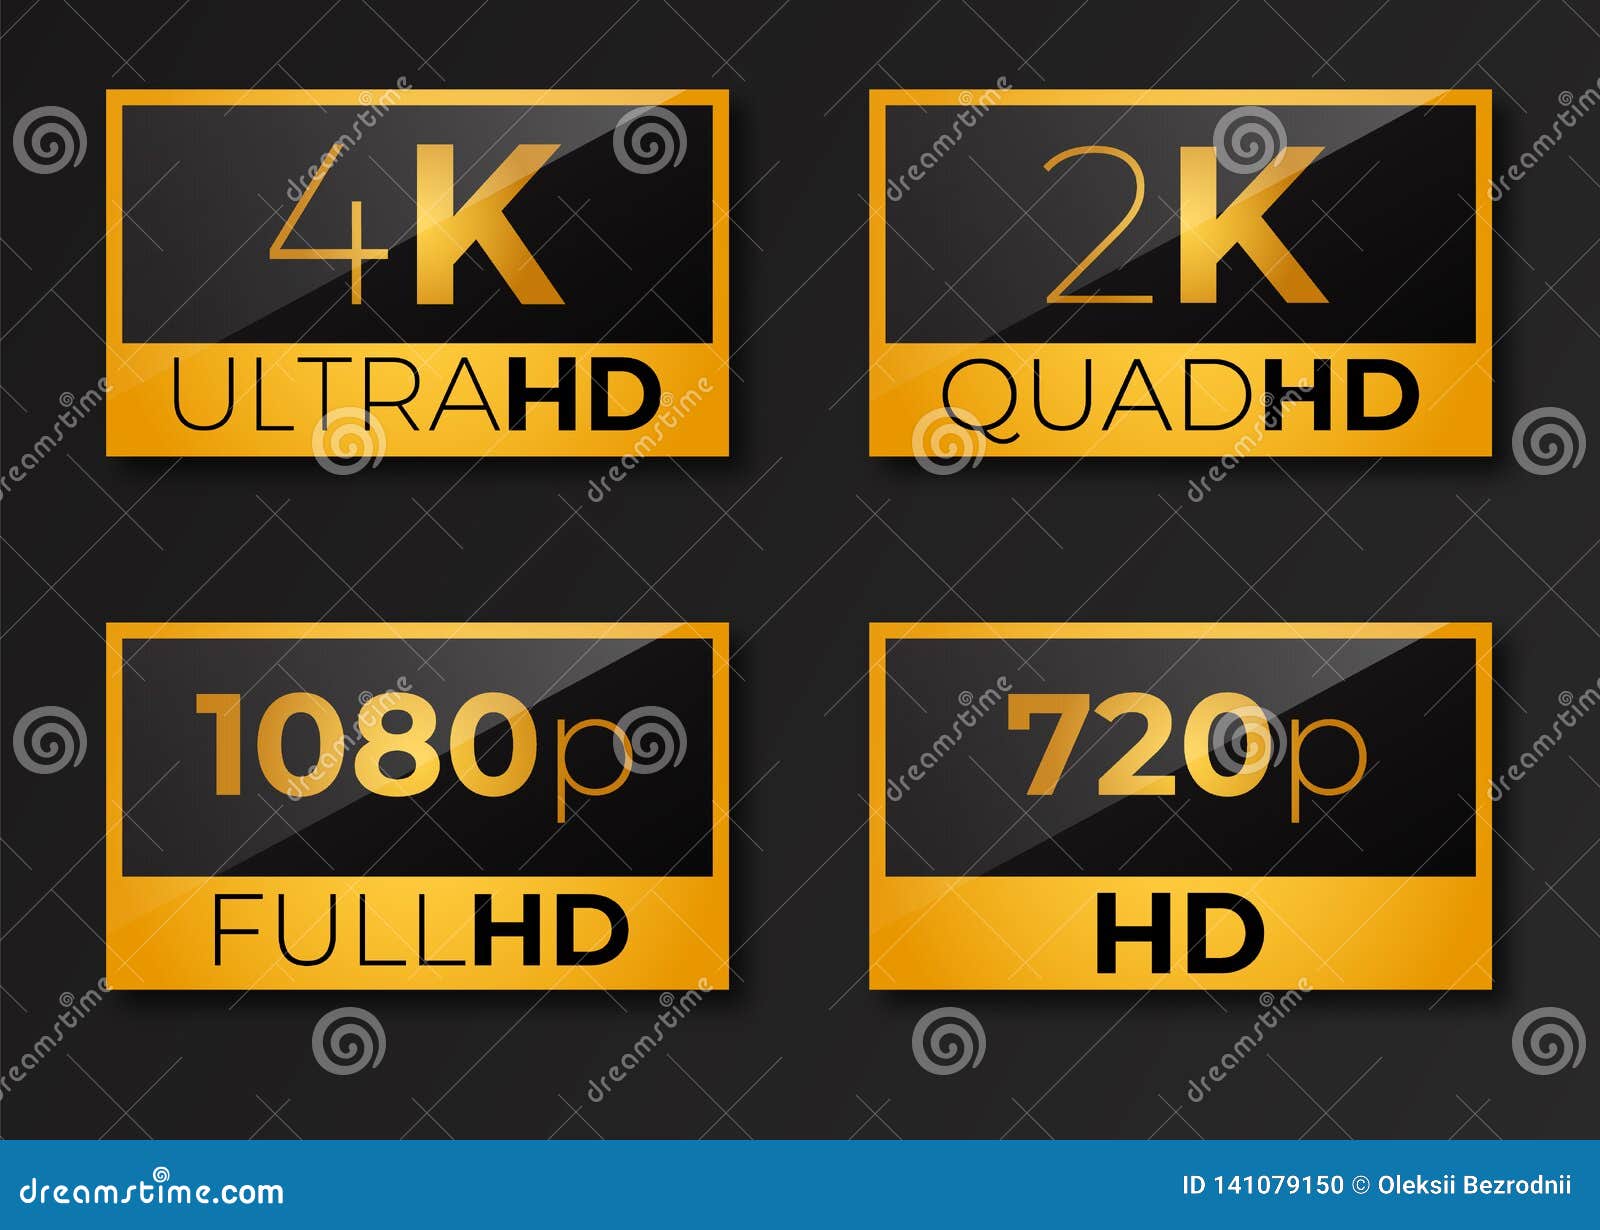 720p, 1080p, 1440p, 2K, 4K, 5K, 8K : Explication de la résolution